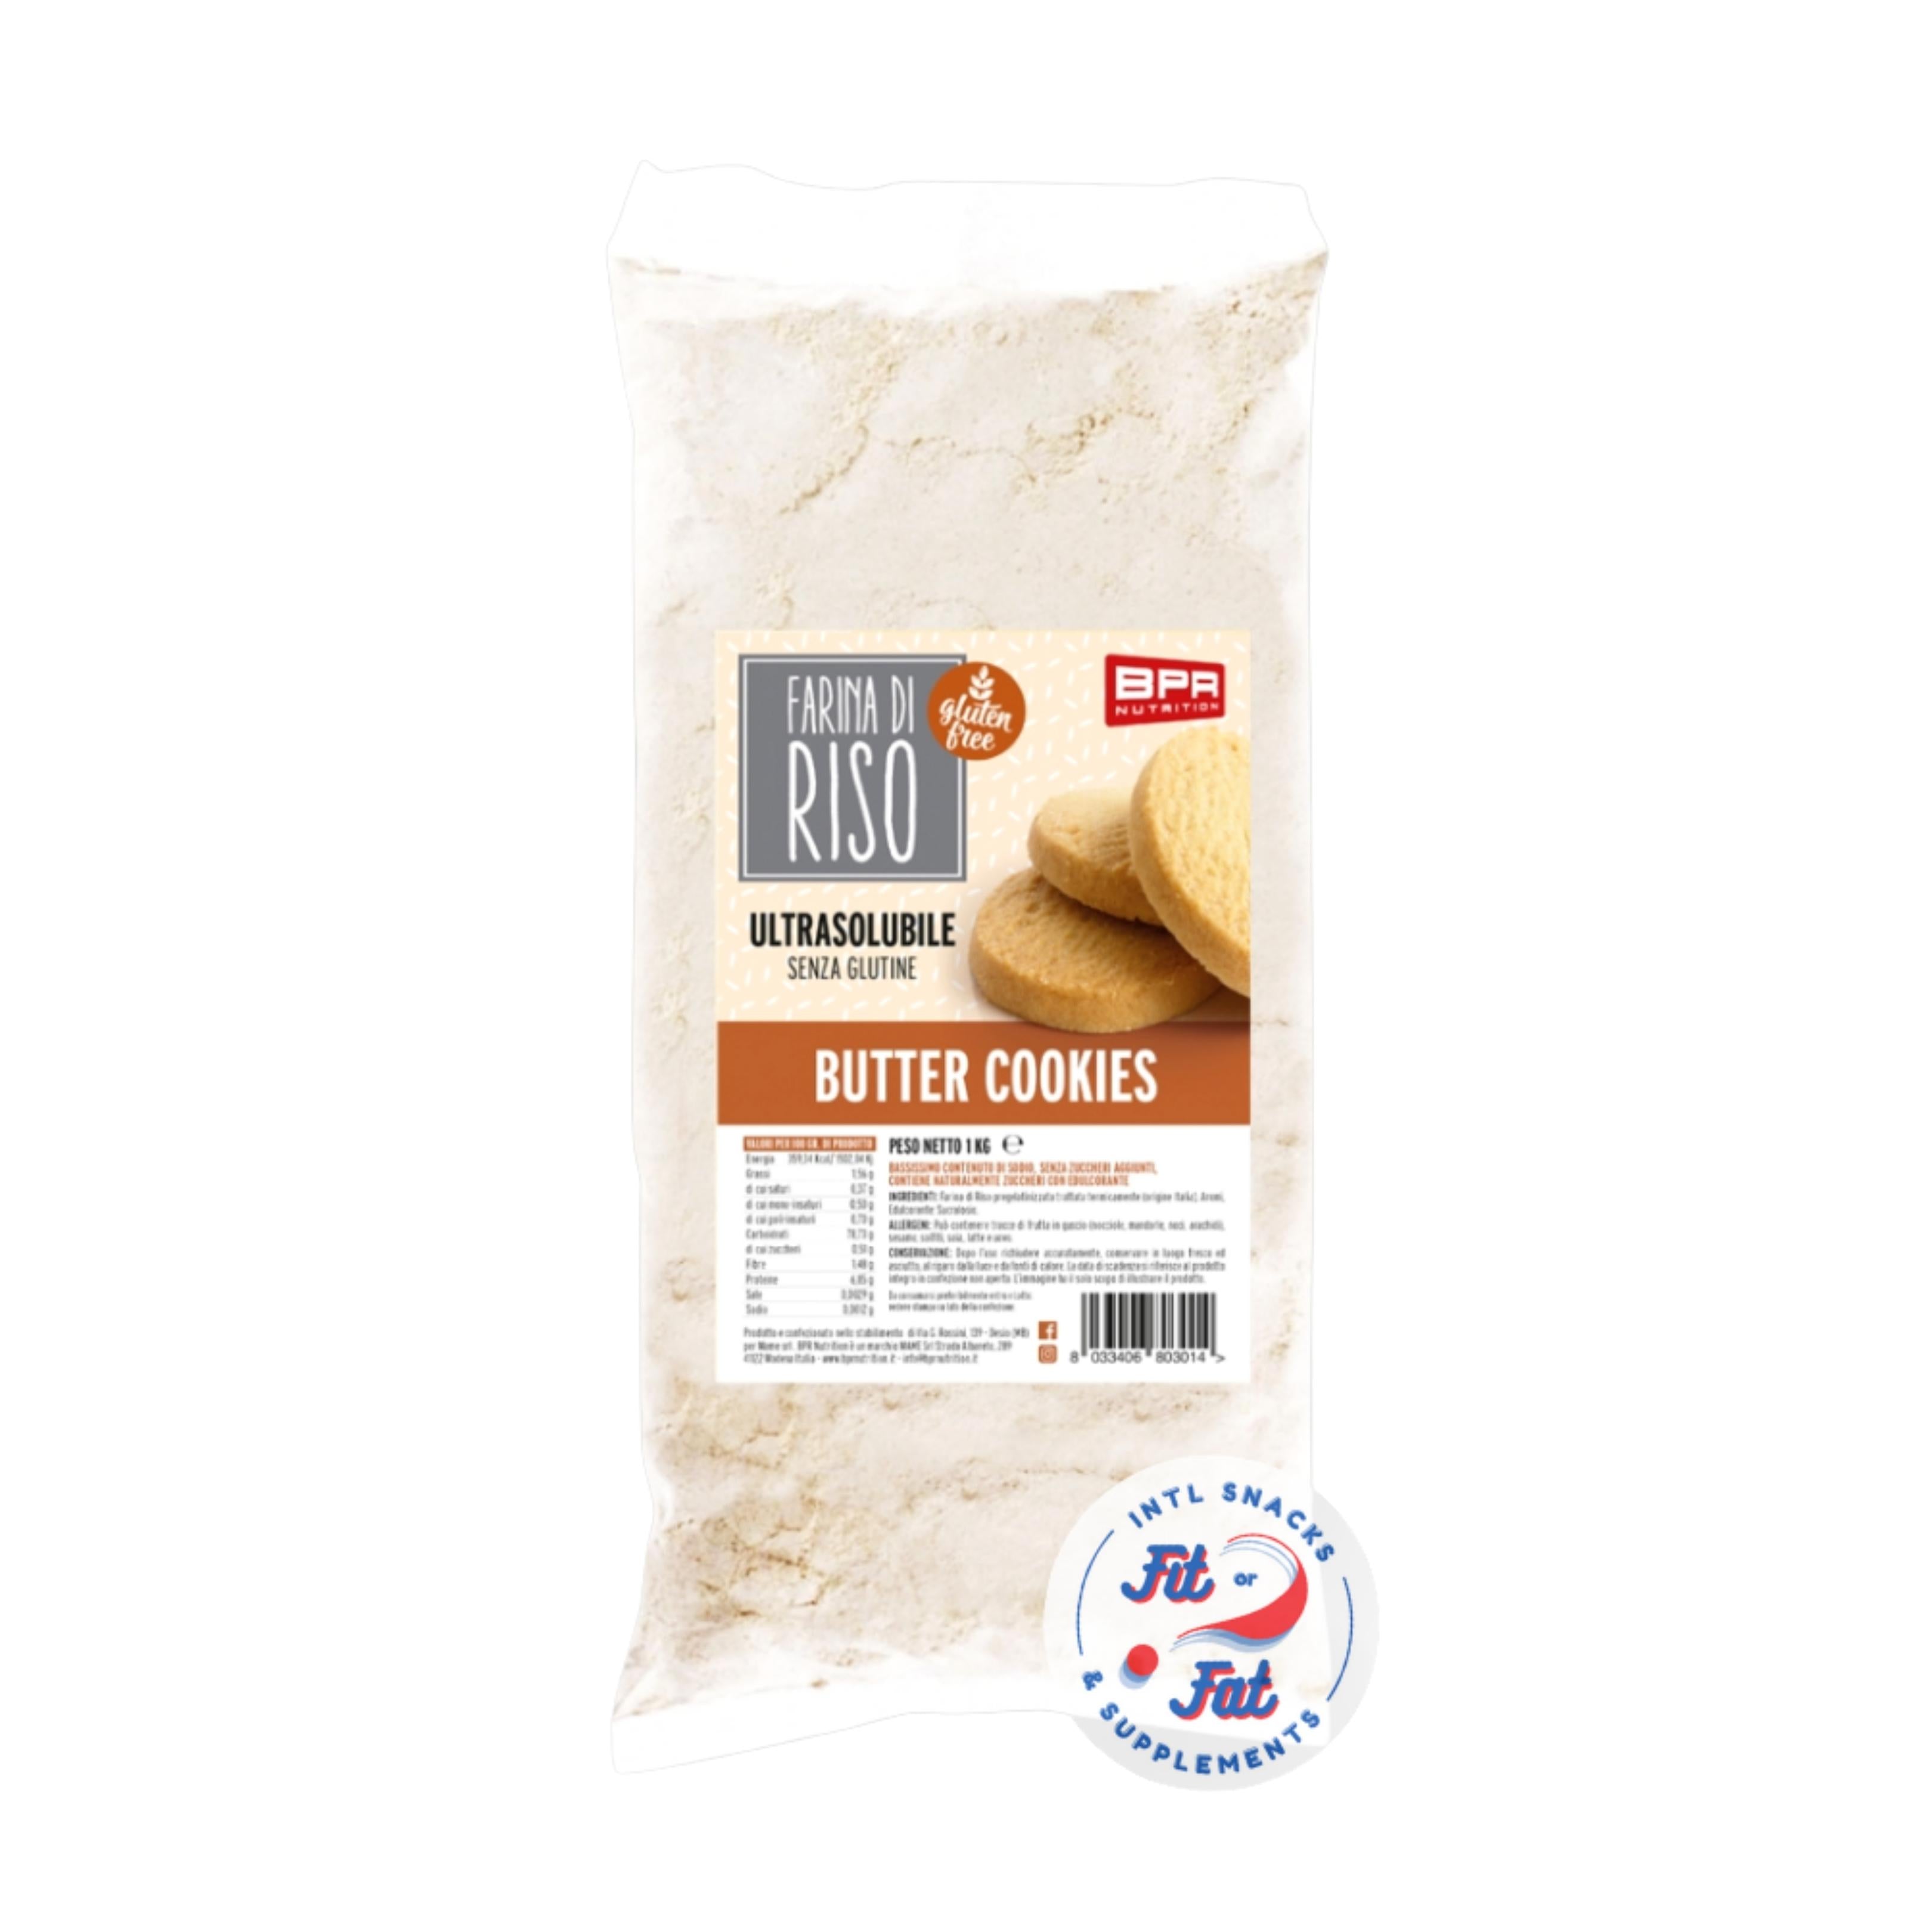 Bpr Nutrition - Farina di Riso Pregelatinizzata Butter Cookies 1 kg –  Acquista Online al Miglior Prezzo - Fit or Fat Market